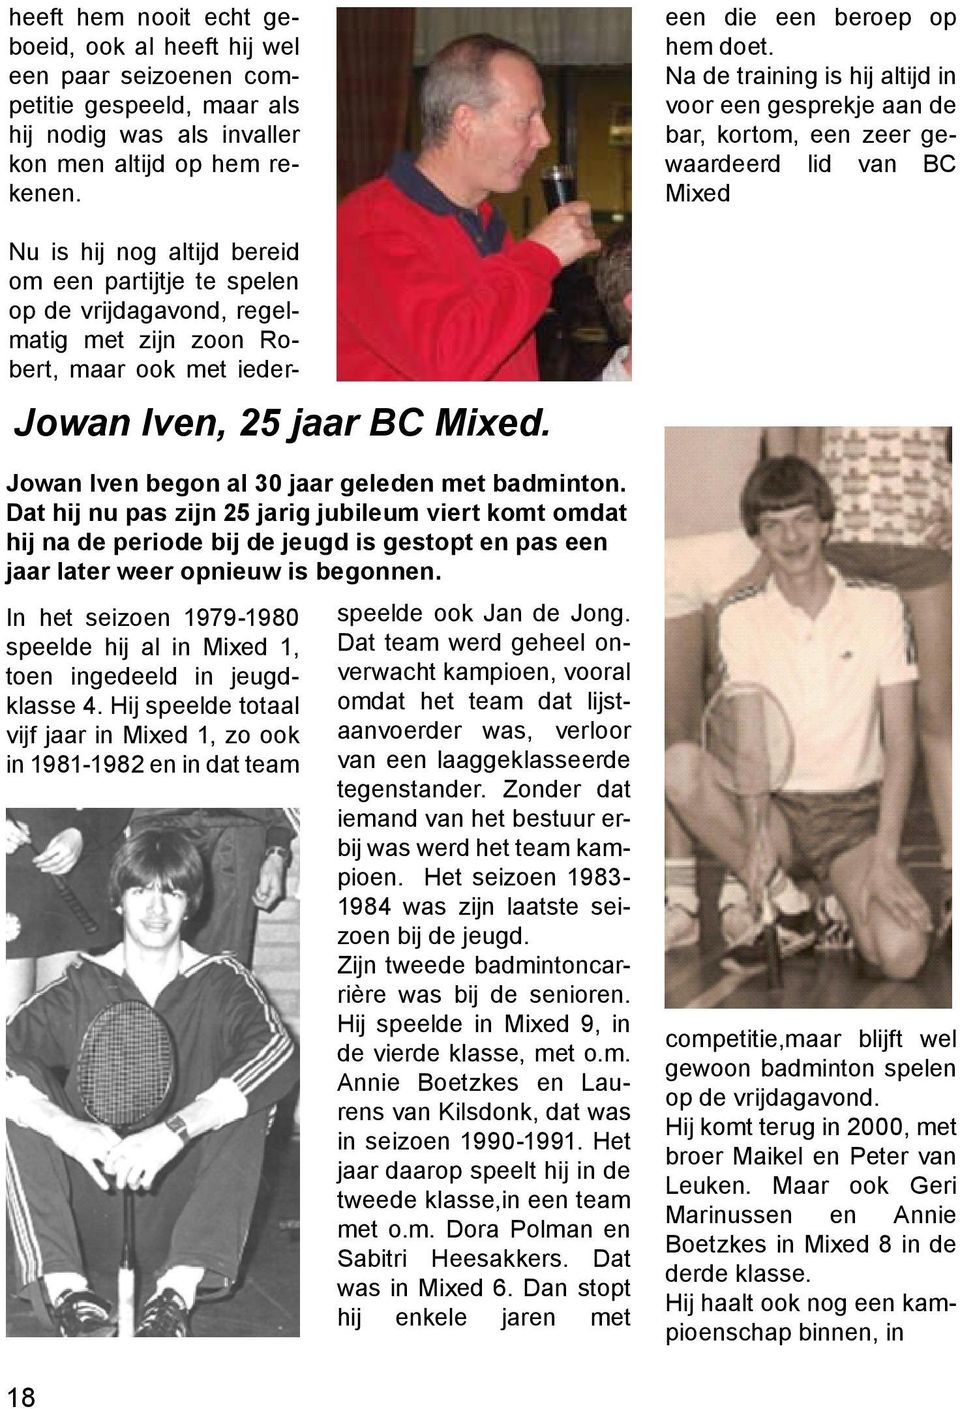 Na de training is hij altijd in voor een gesprekje aan de bar, kortom, een zeer gewaardeerd lid van BC Mixed Jowan Iven, 25 jaar BC Mixed. Jowan Iven begon al 30 jaar geleden met badminton.